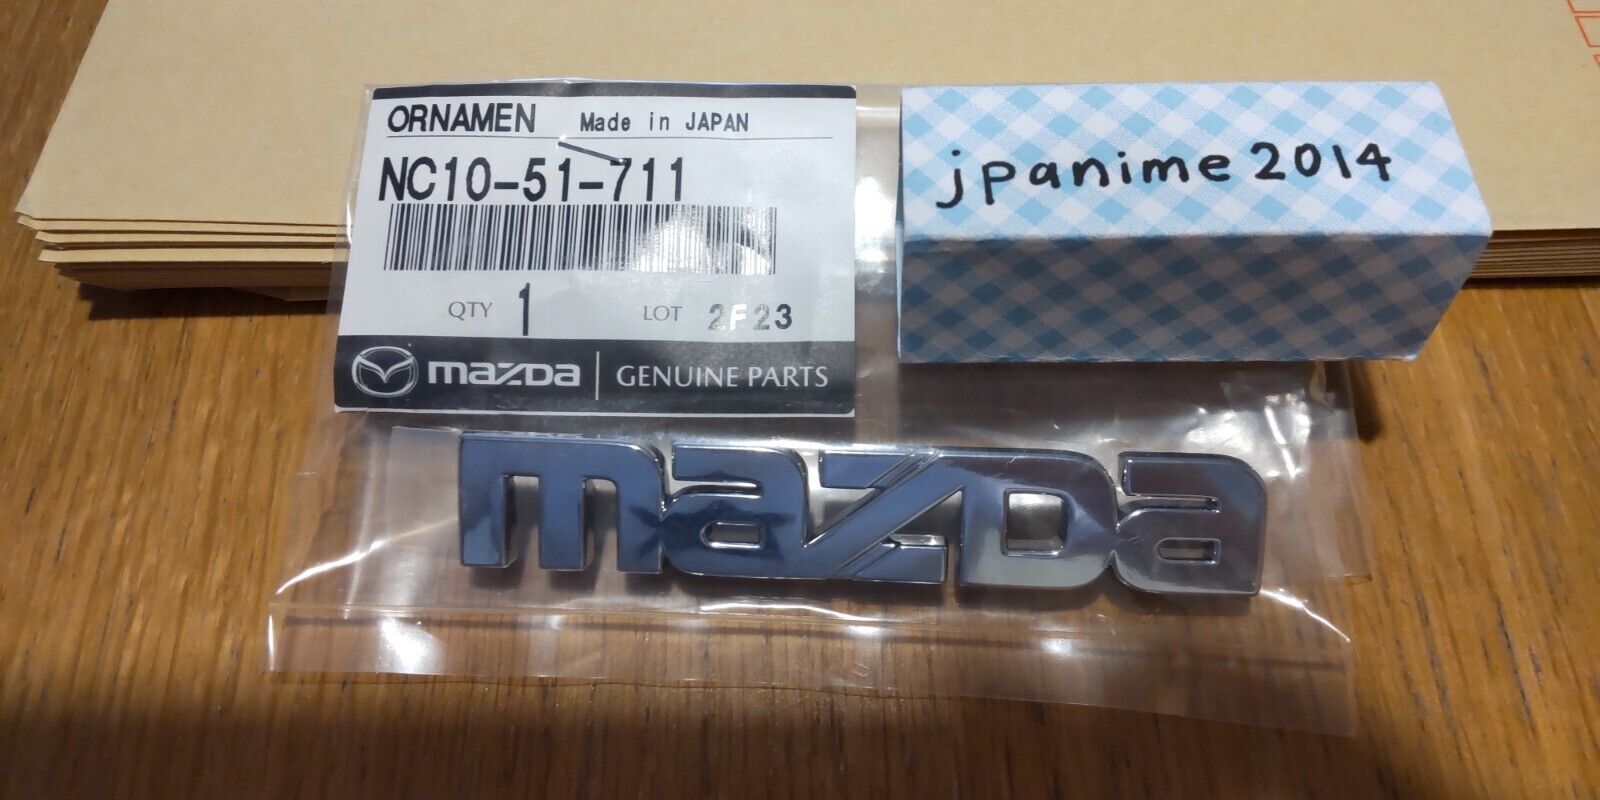 Genuine 1998-2005 Mazda MX-5 Miata Rear MazdaLogo Emblem OEM NC10-51-711 * >